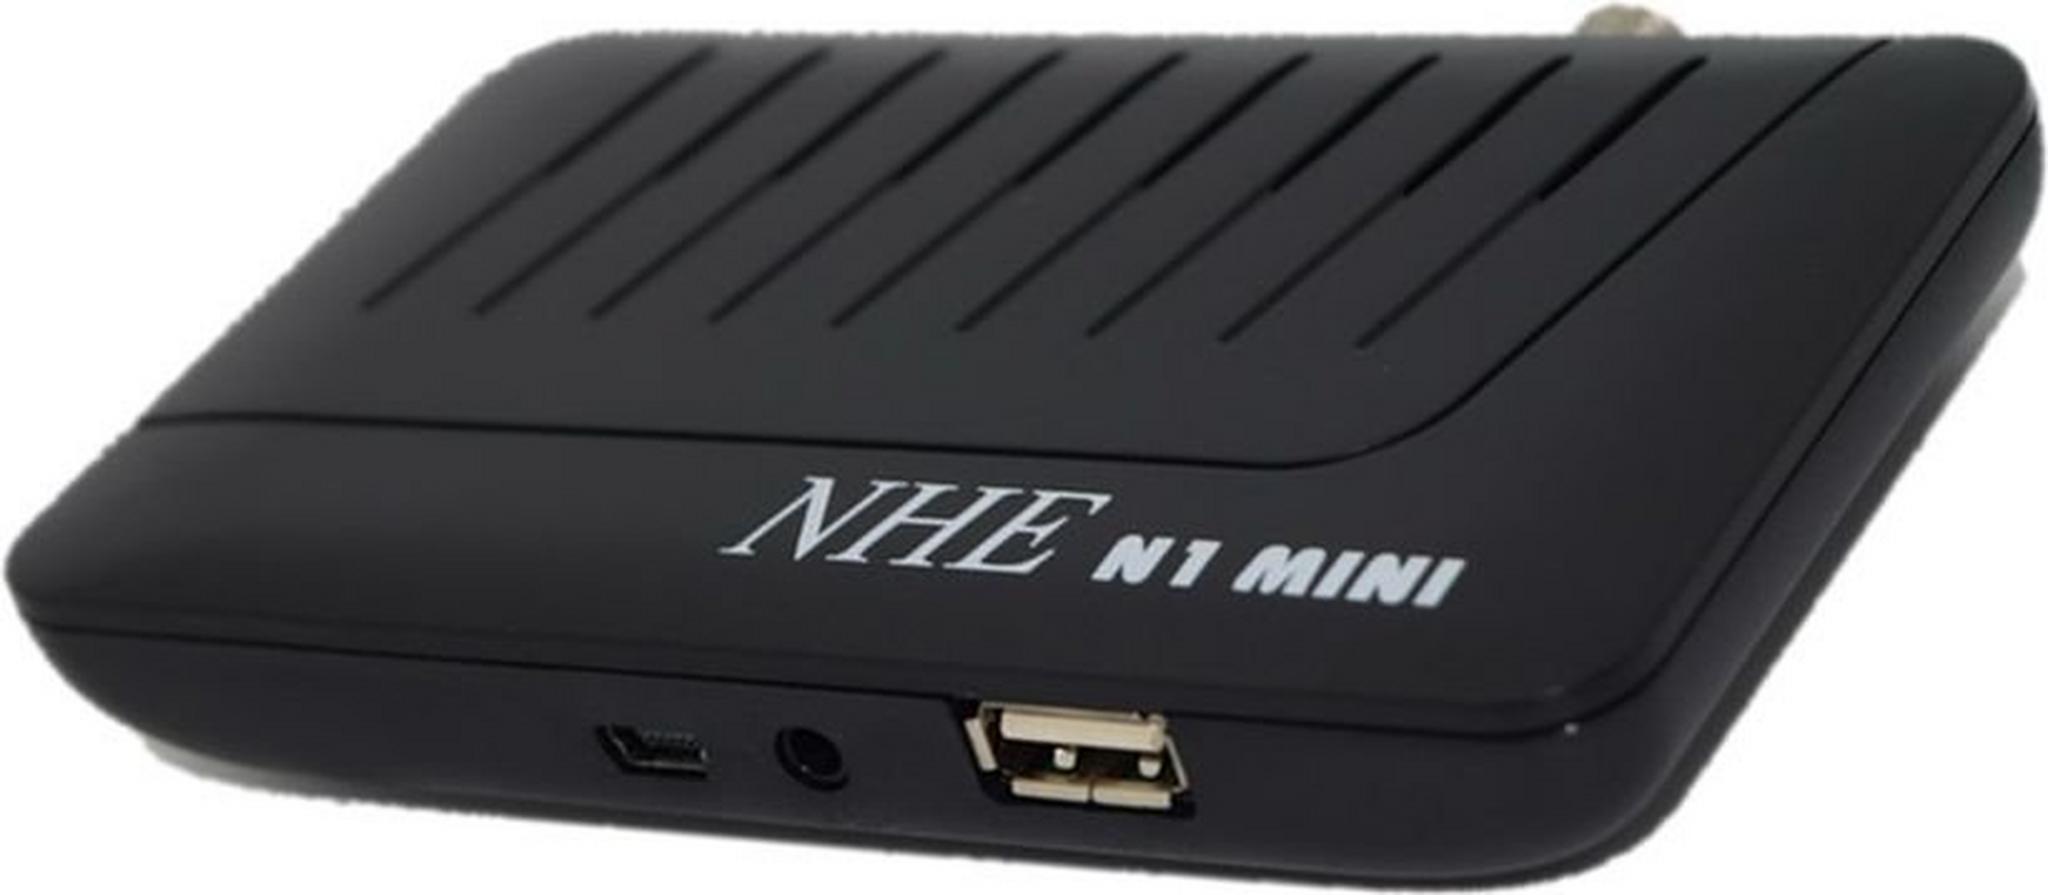 NHE N1 Mini HD Satellite Receiver